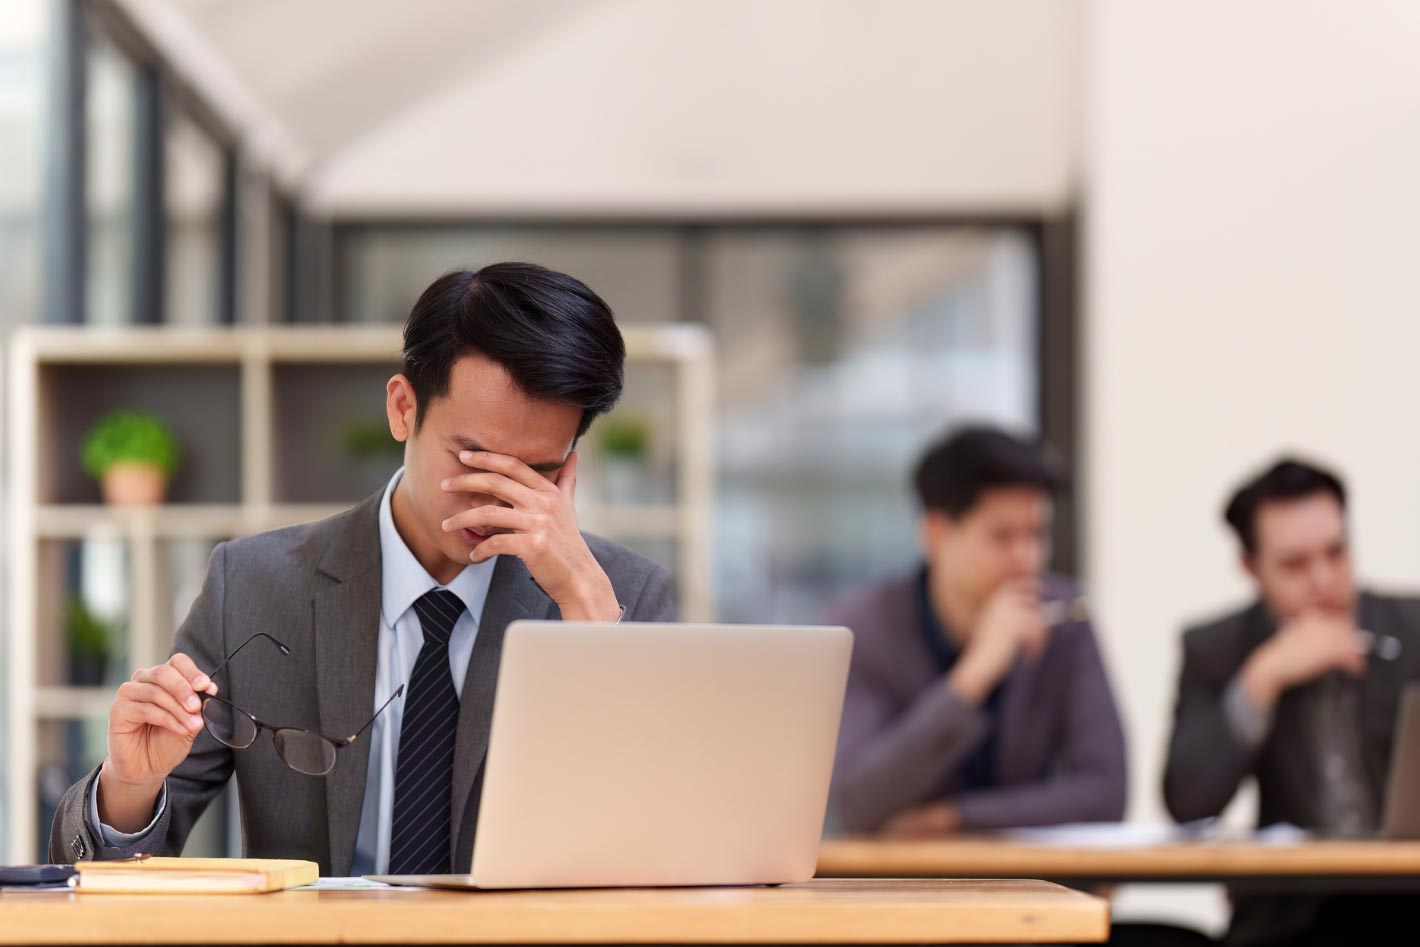 一位穿著正式西裝的男性在辦公室環境中顯得沮喪和疲憊，手扶著額頭，眼鏡拿在另一手上，看起來像是在長時間的工作後感到壓力，電腦筆記本放在桌子上，背景中有模糊的同事正在交談。